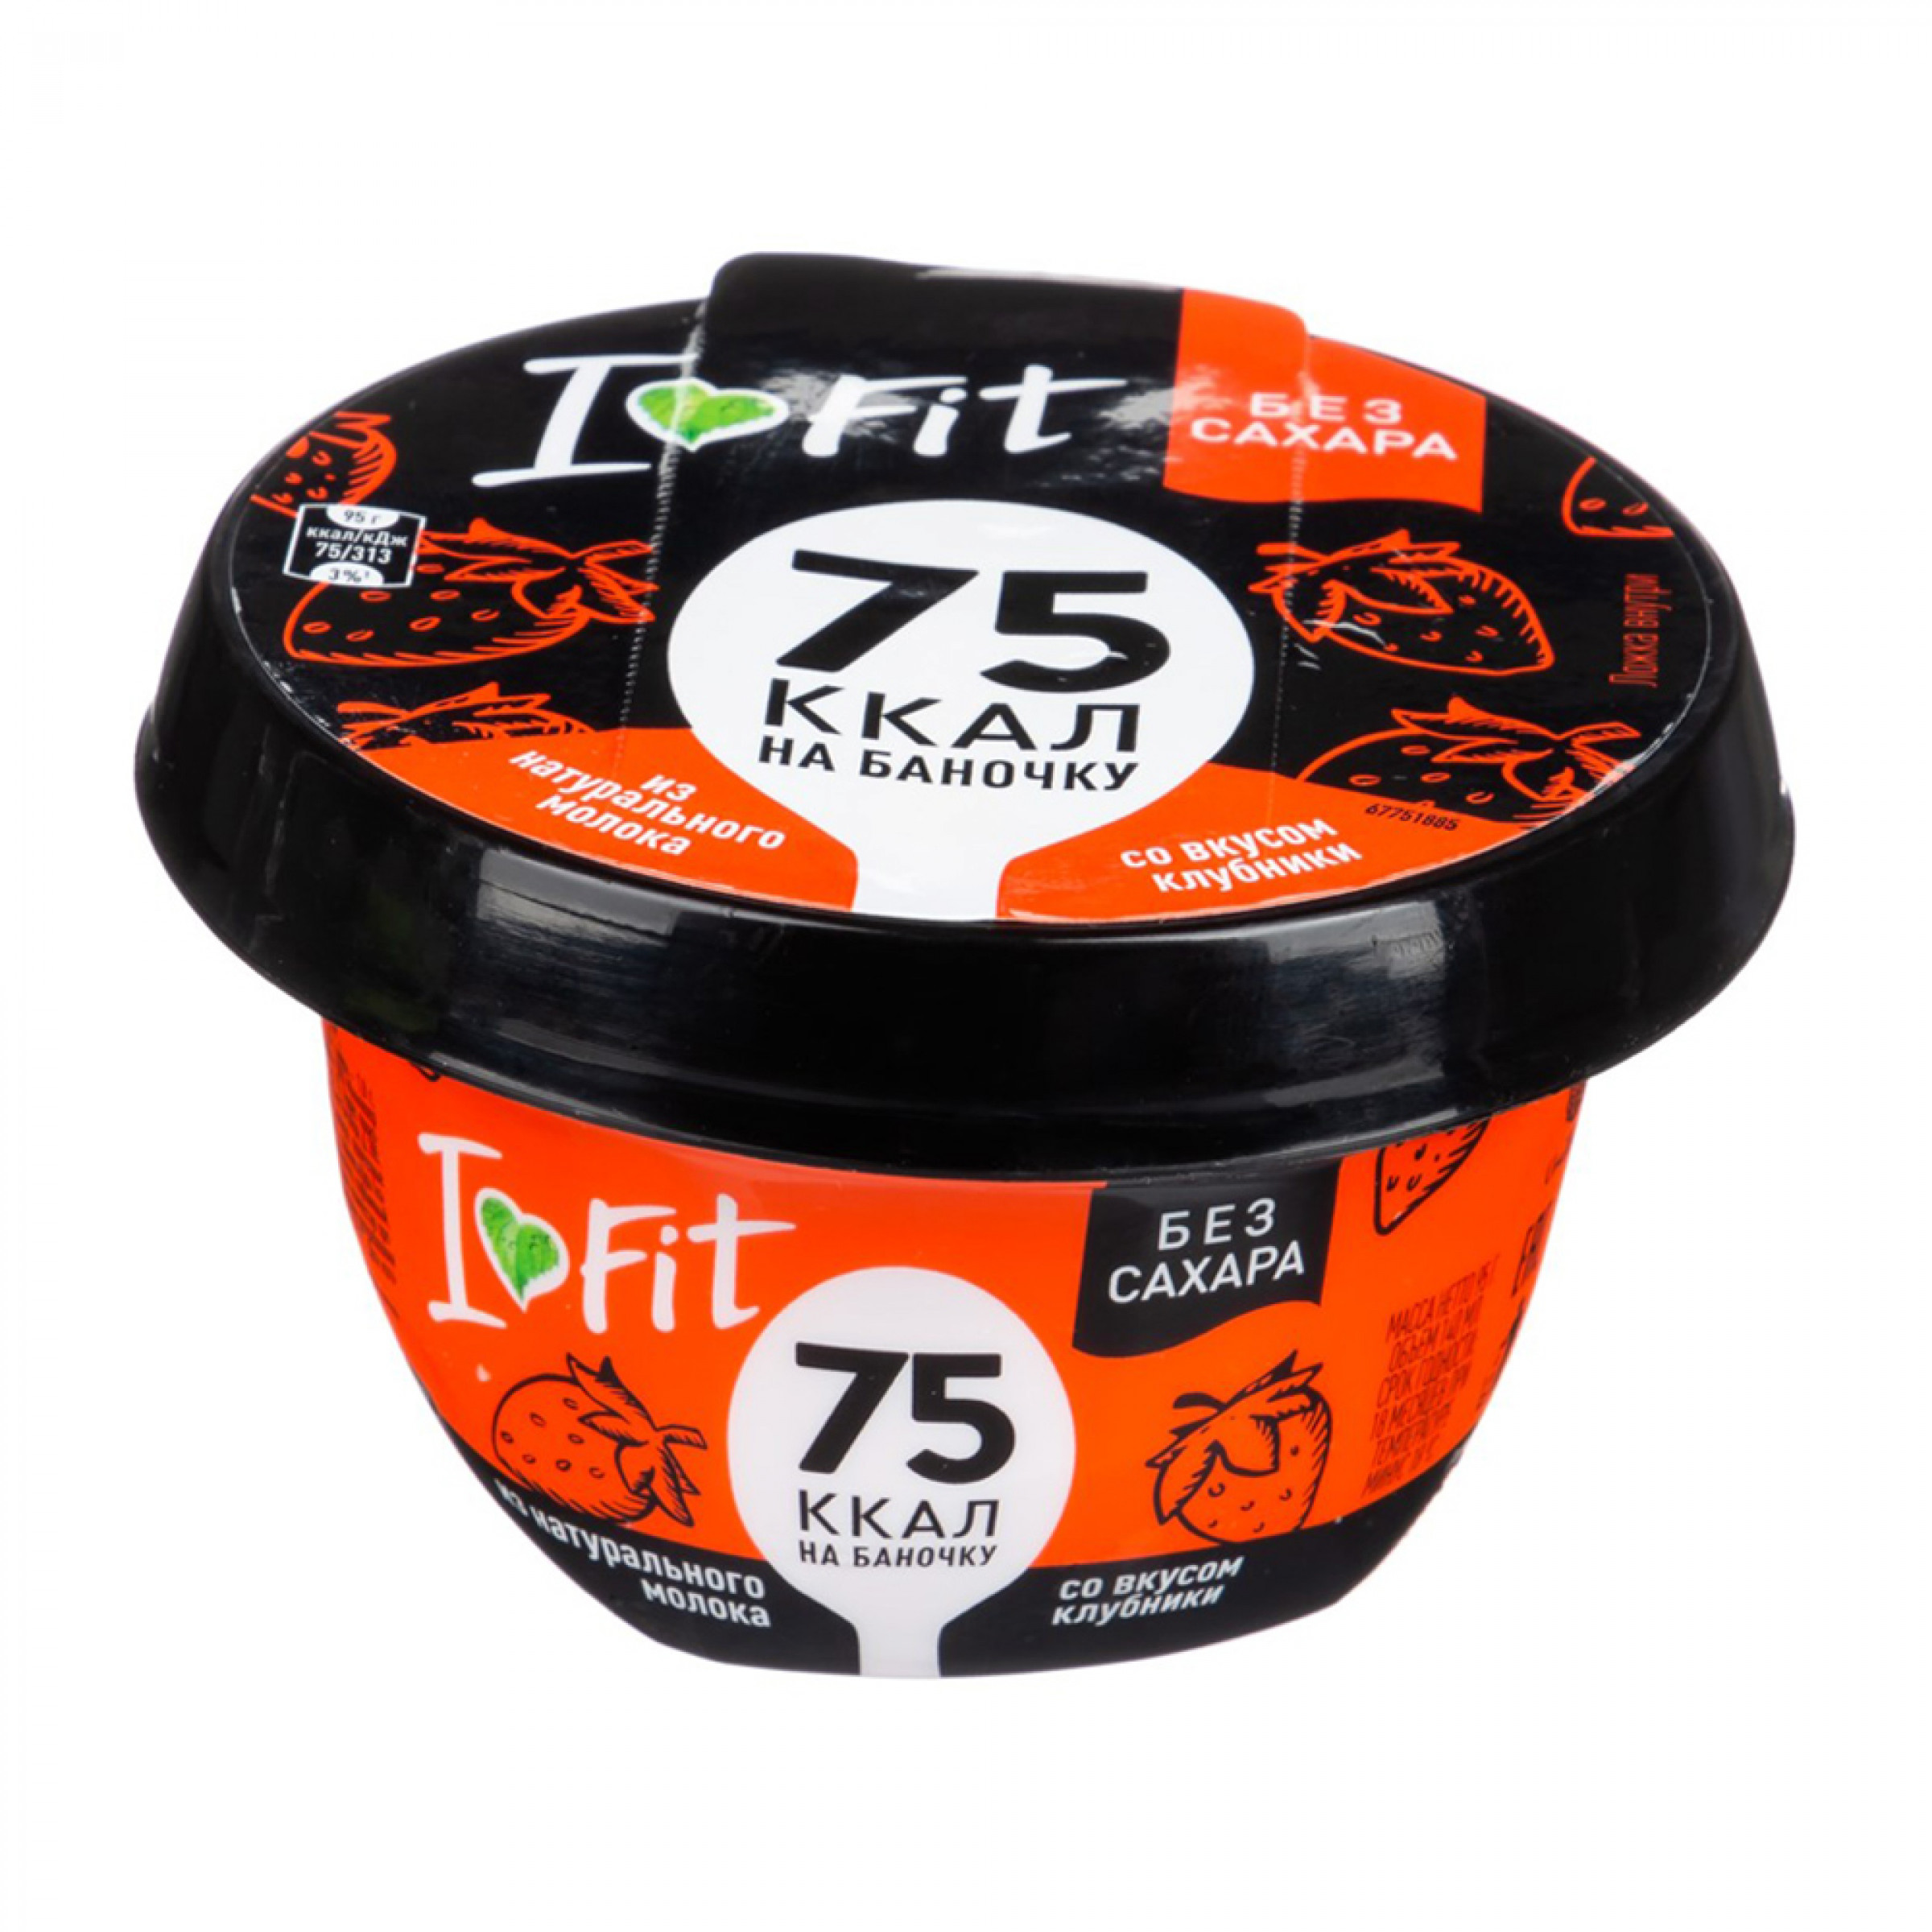 Мороженое I LOVE FIT со вкусом клубники, 95гр.